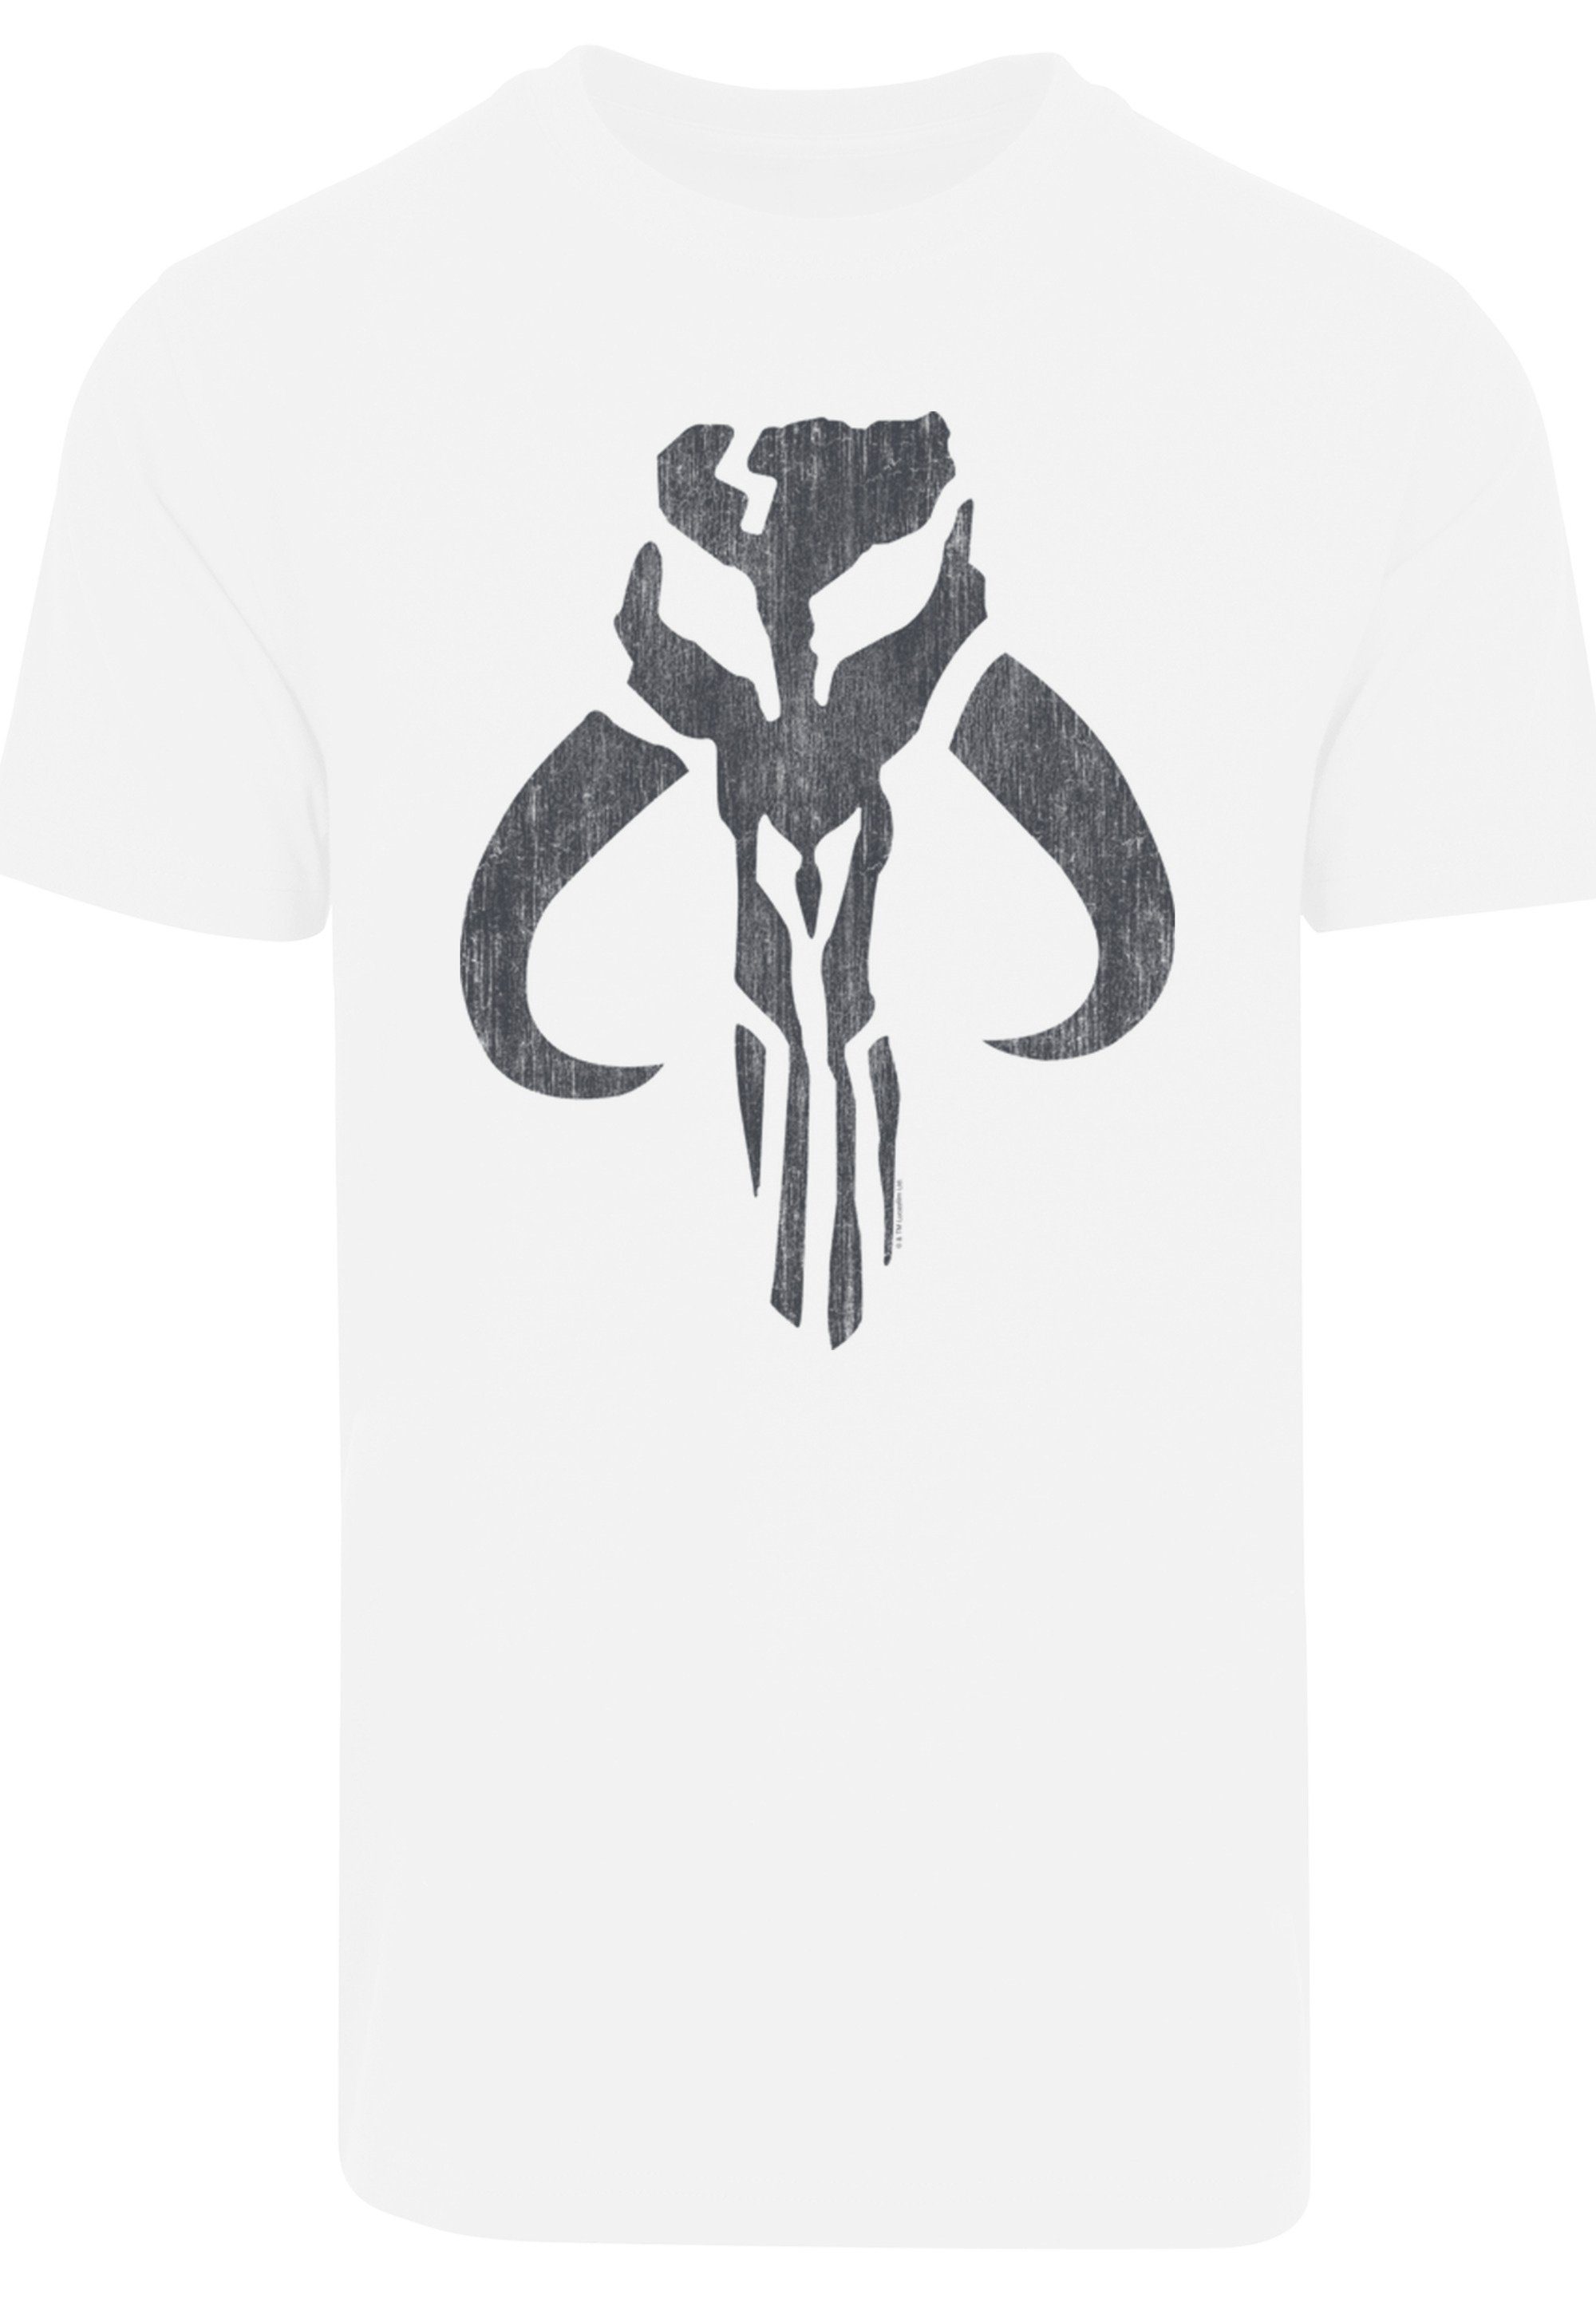 F4NT4STIC T-Shirt Star Wars Skull Print Banther weiß Mandalorian